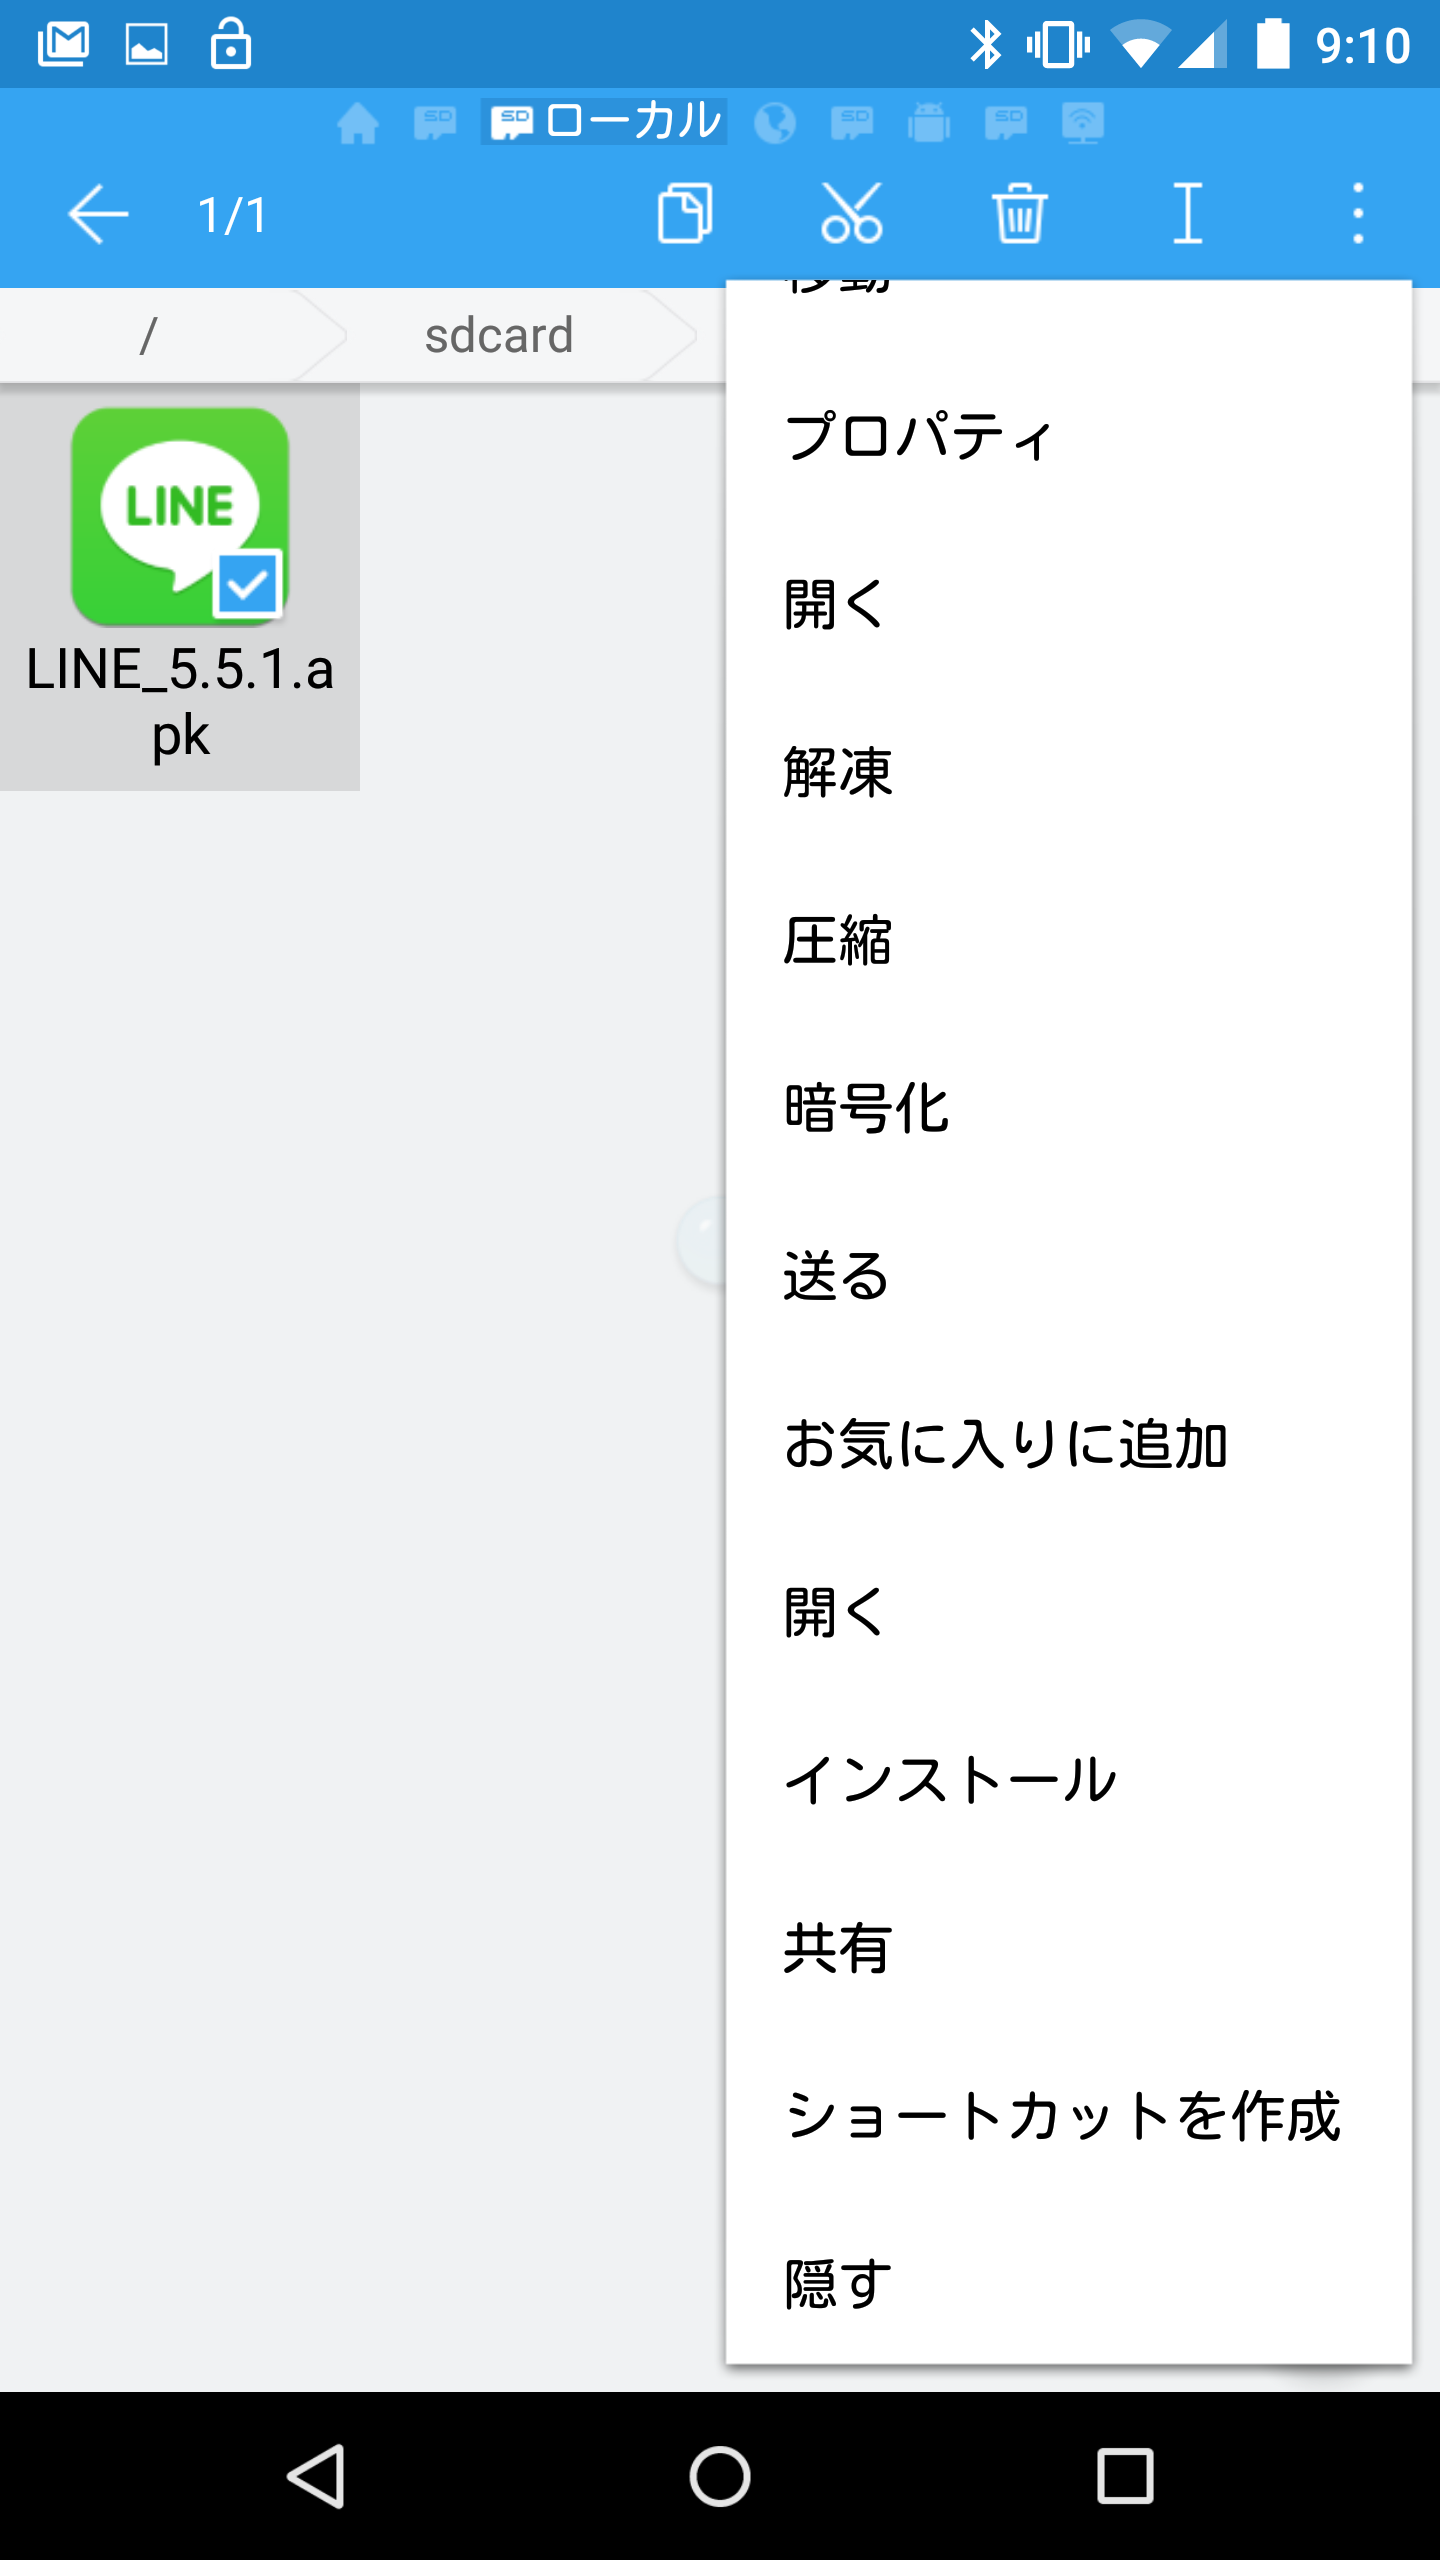 "LINE_5.5.1.apk"をOneDriveにアップロード